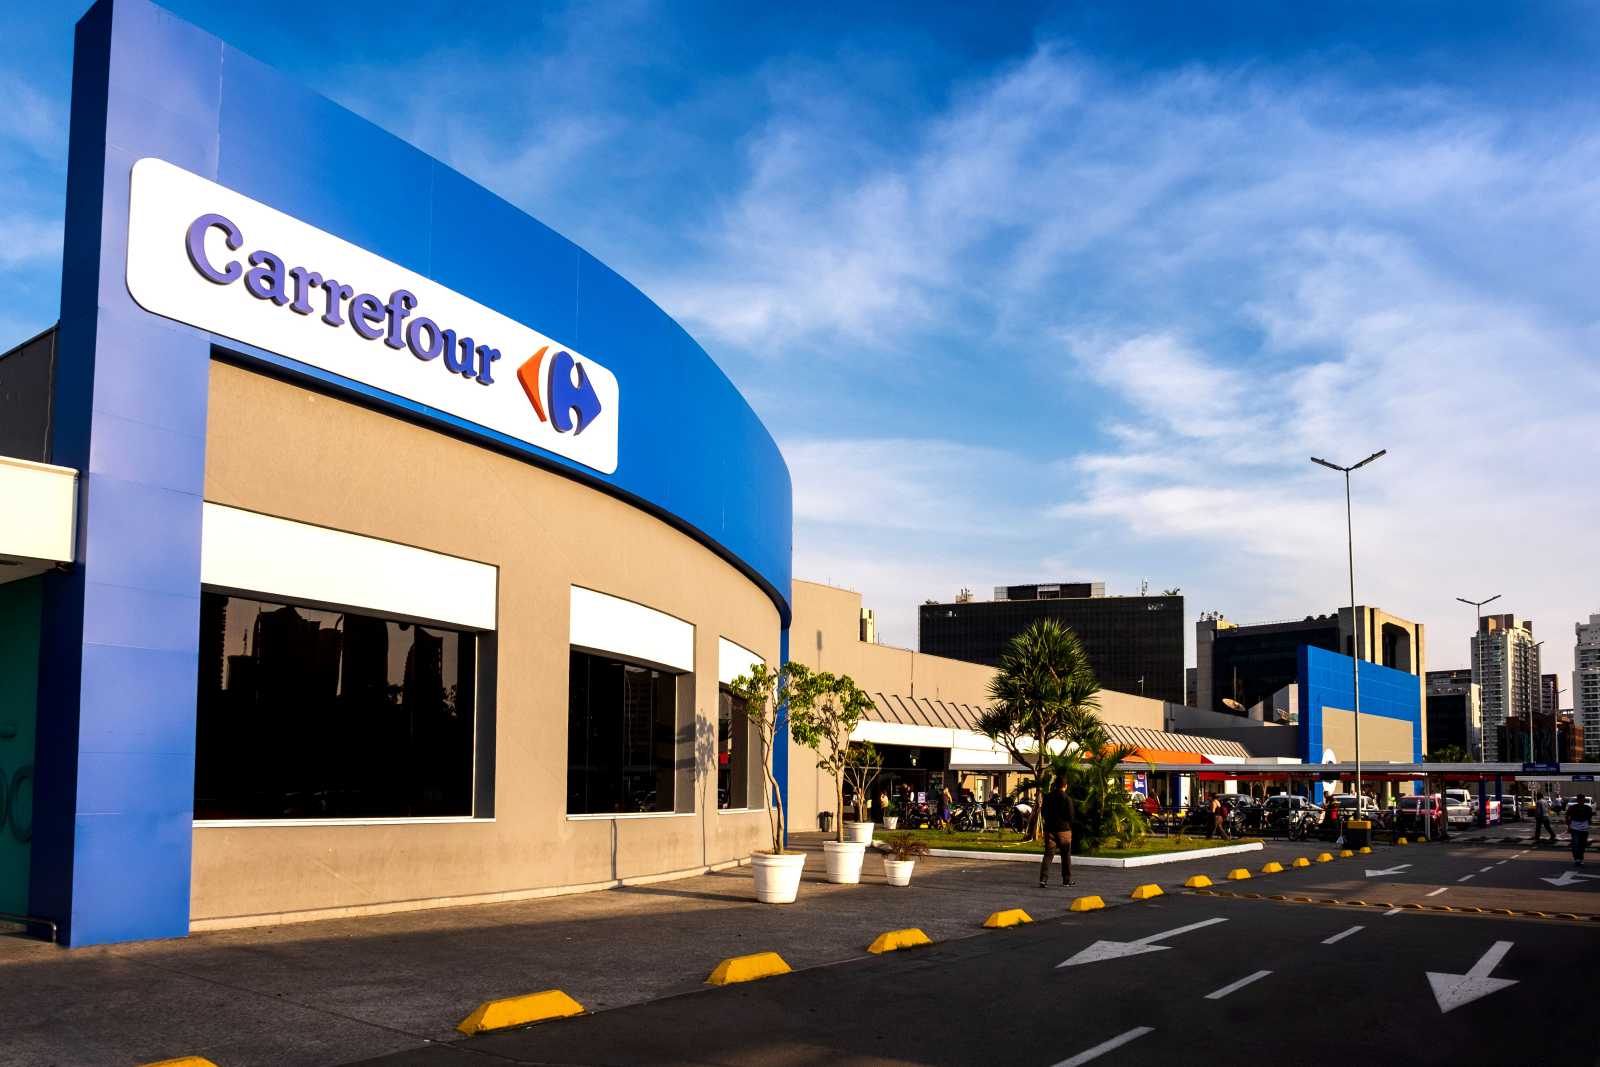 Carrefour : Rejoignez-nous pour un avenir prometteur !